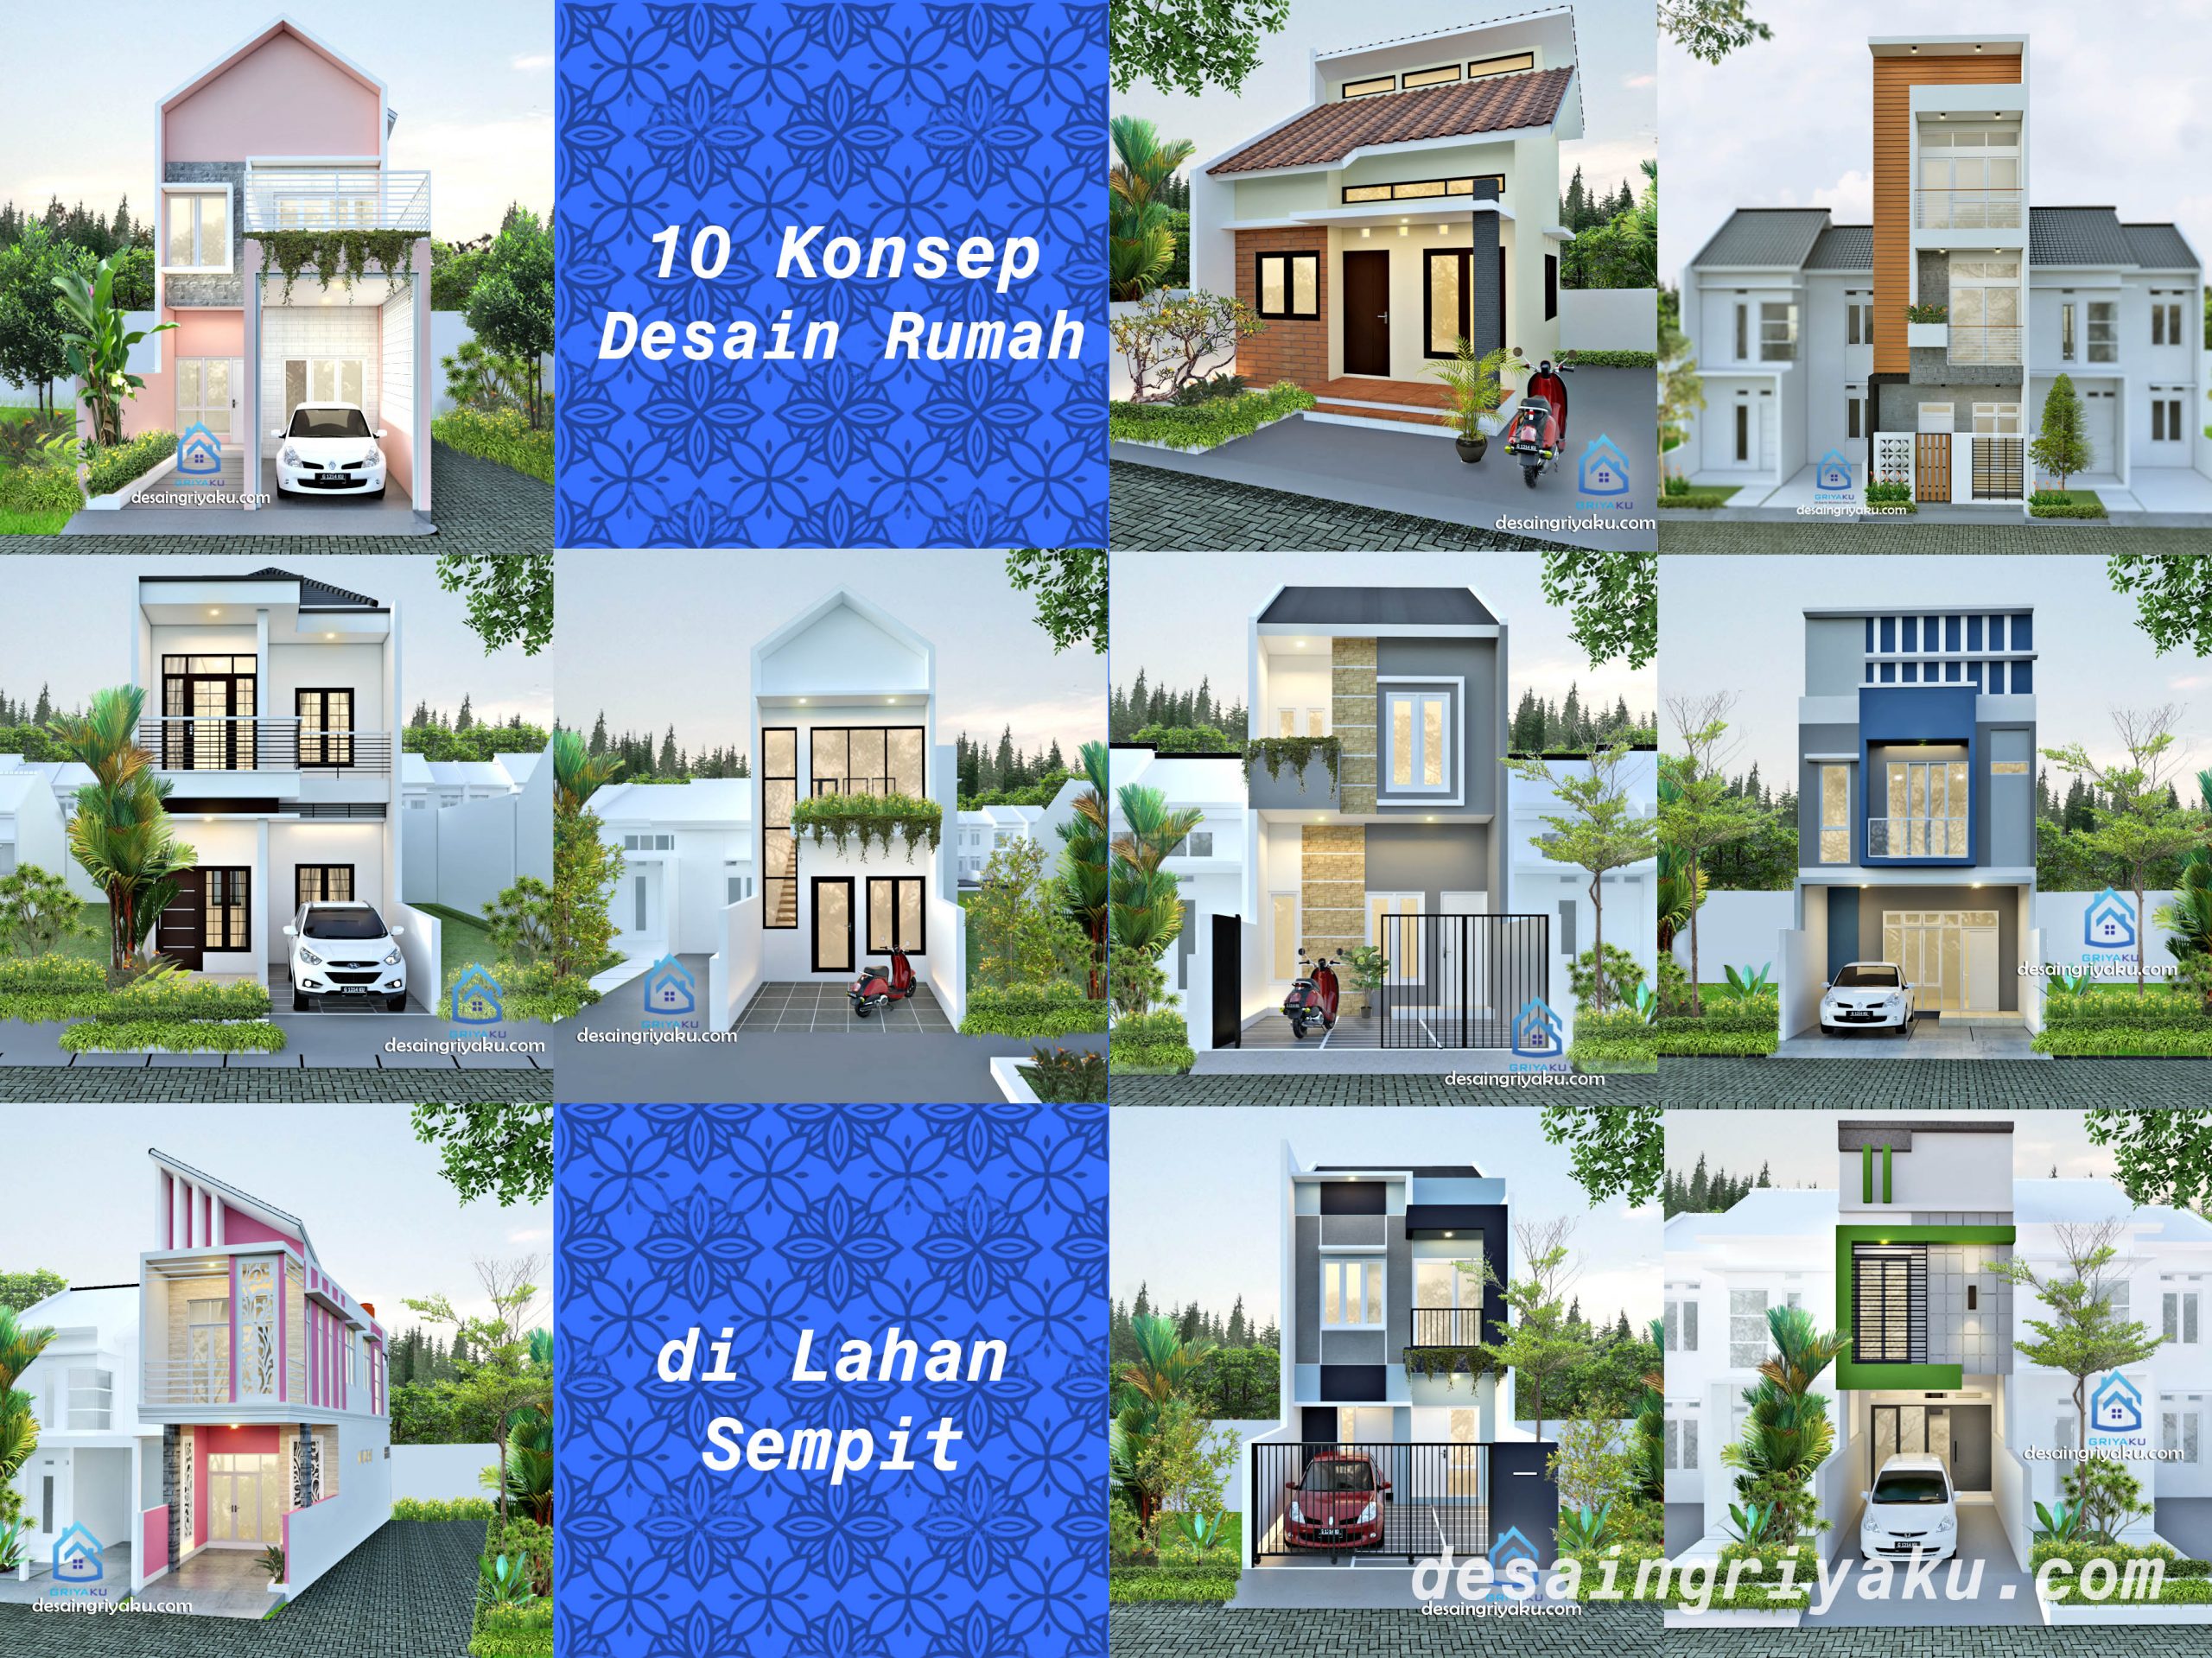 Read more about the article Desain Rumah di lahan Sempit